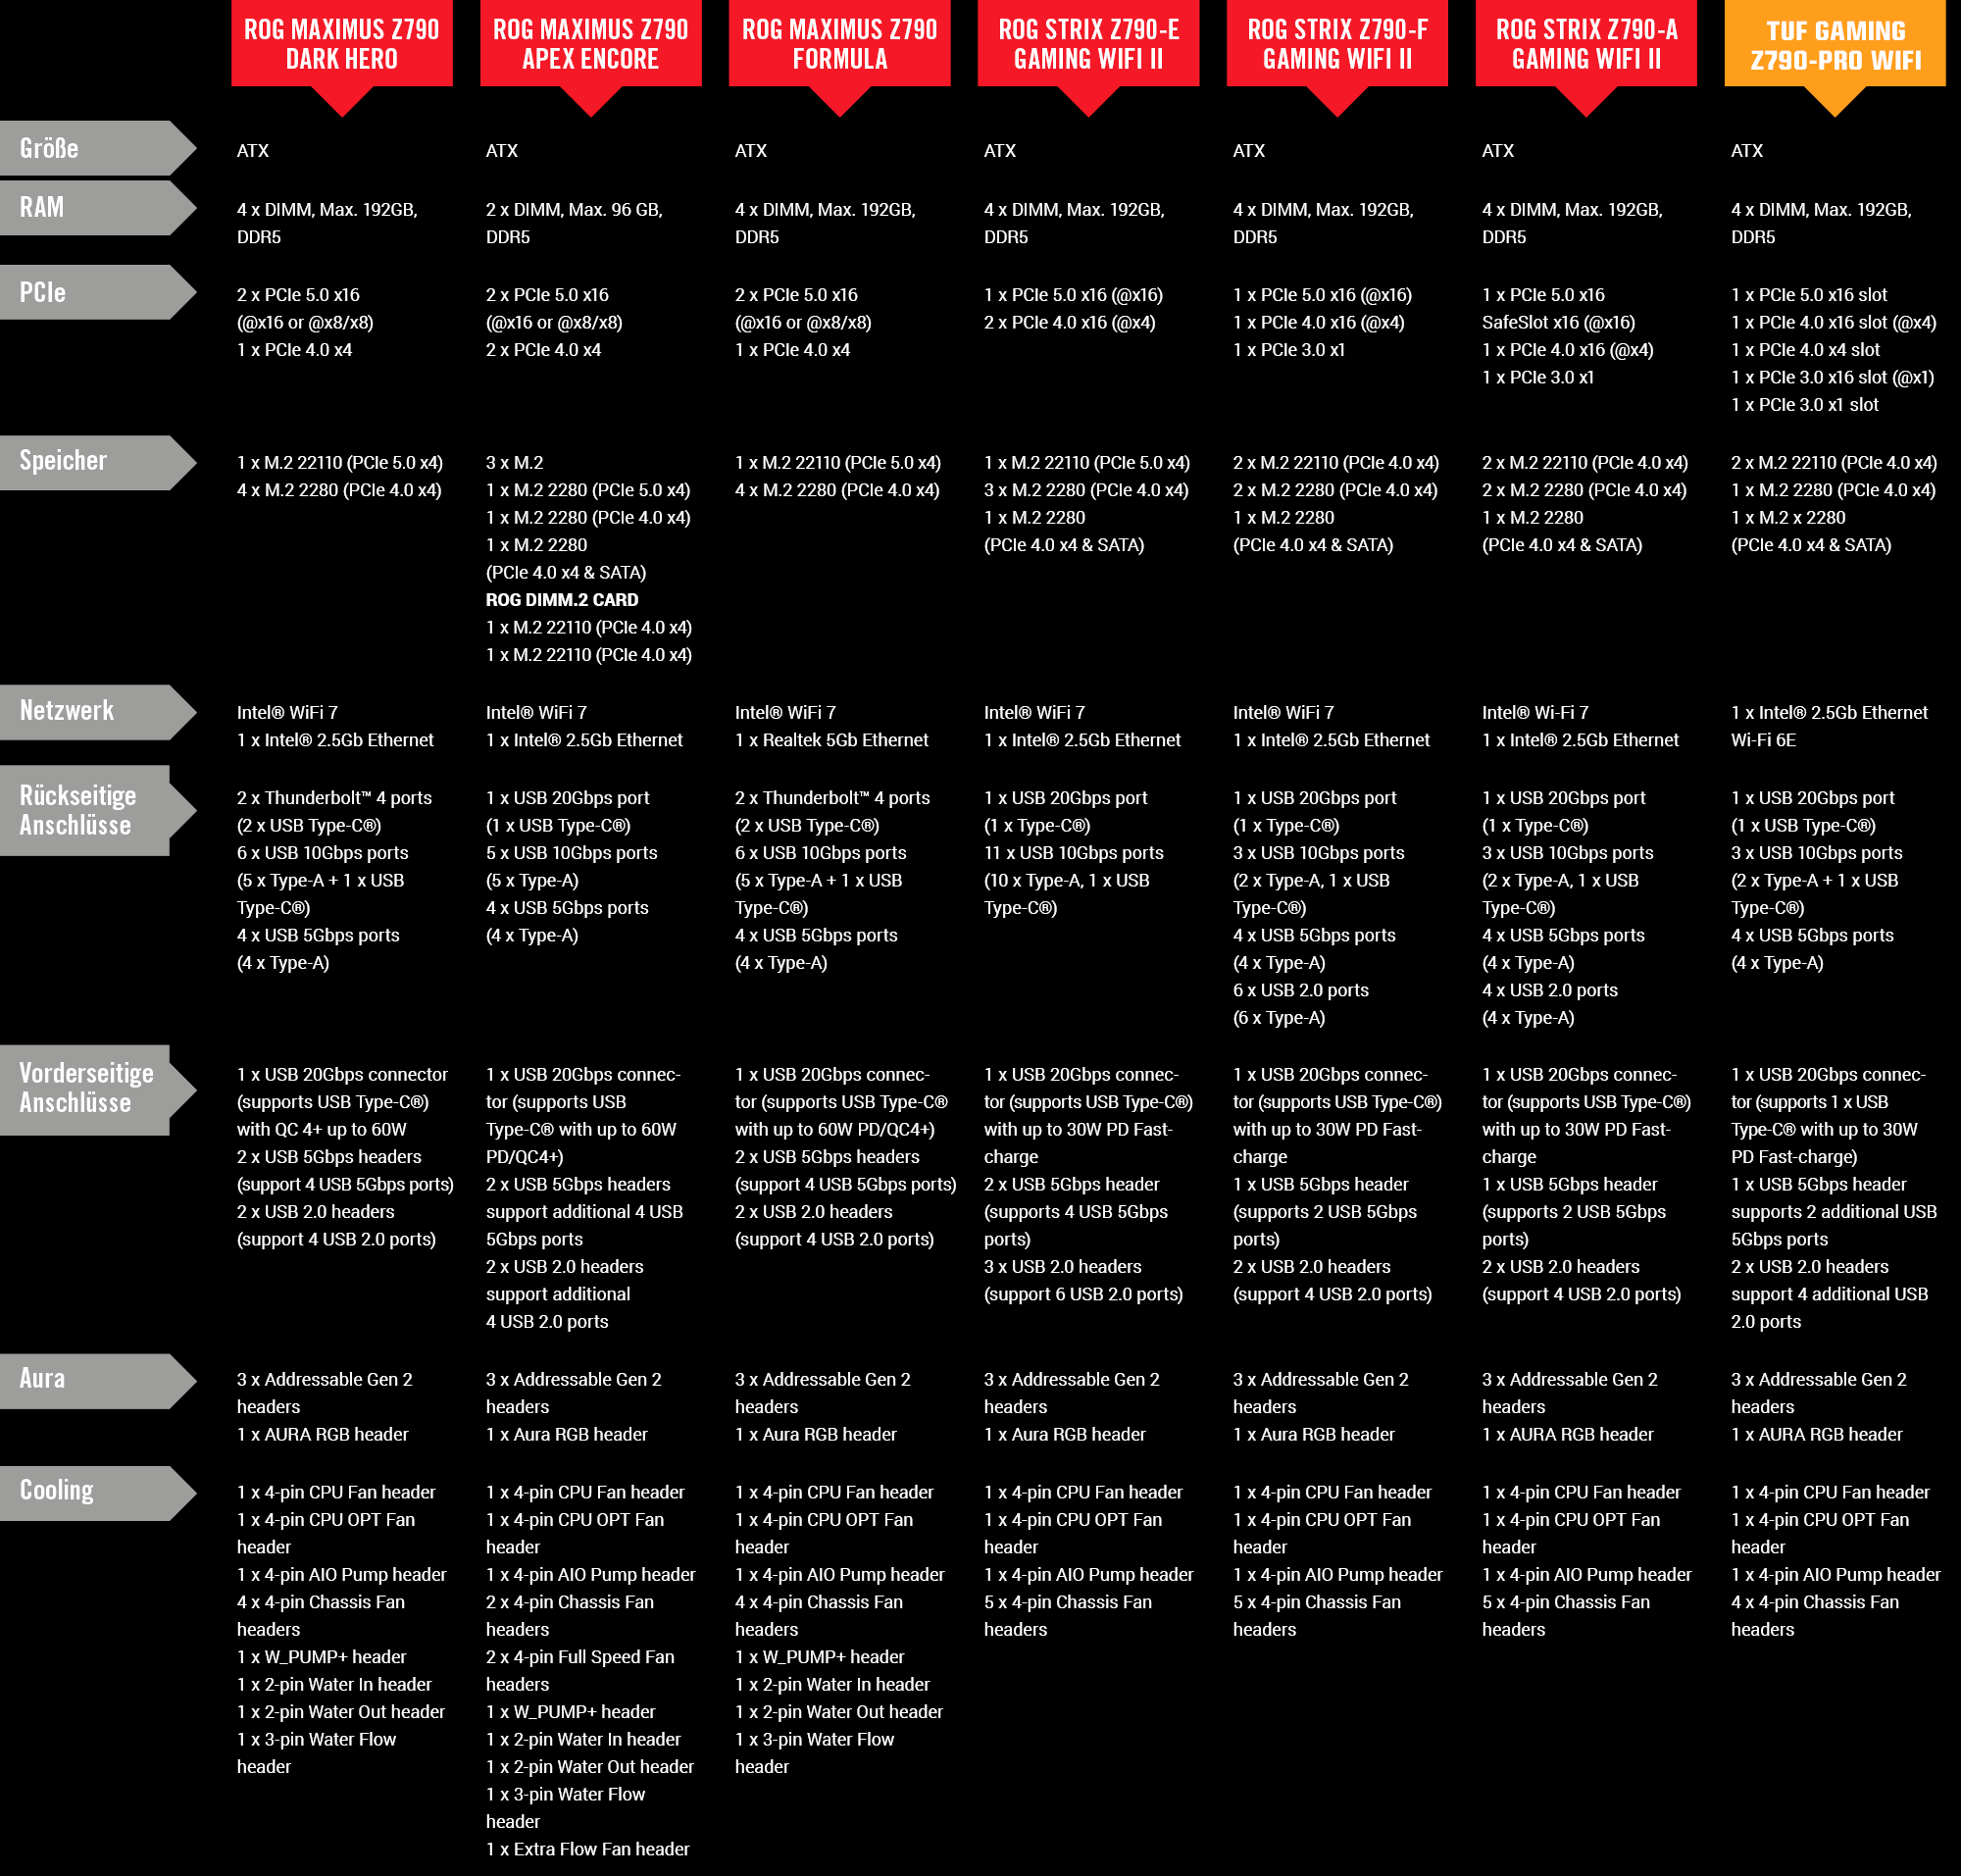 Tabelle mit allen Spezifikationen der Z790 Refresh Mainboards in einer Übersicht